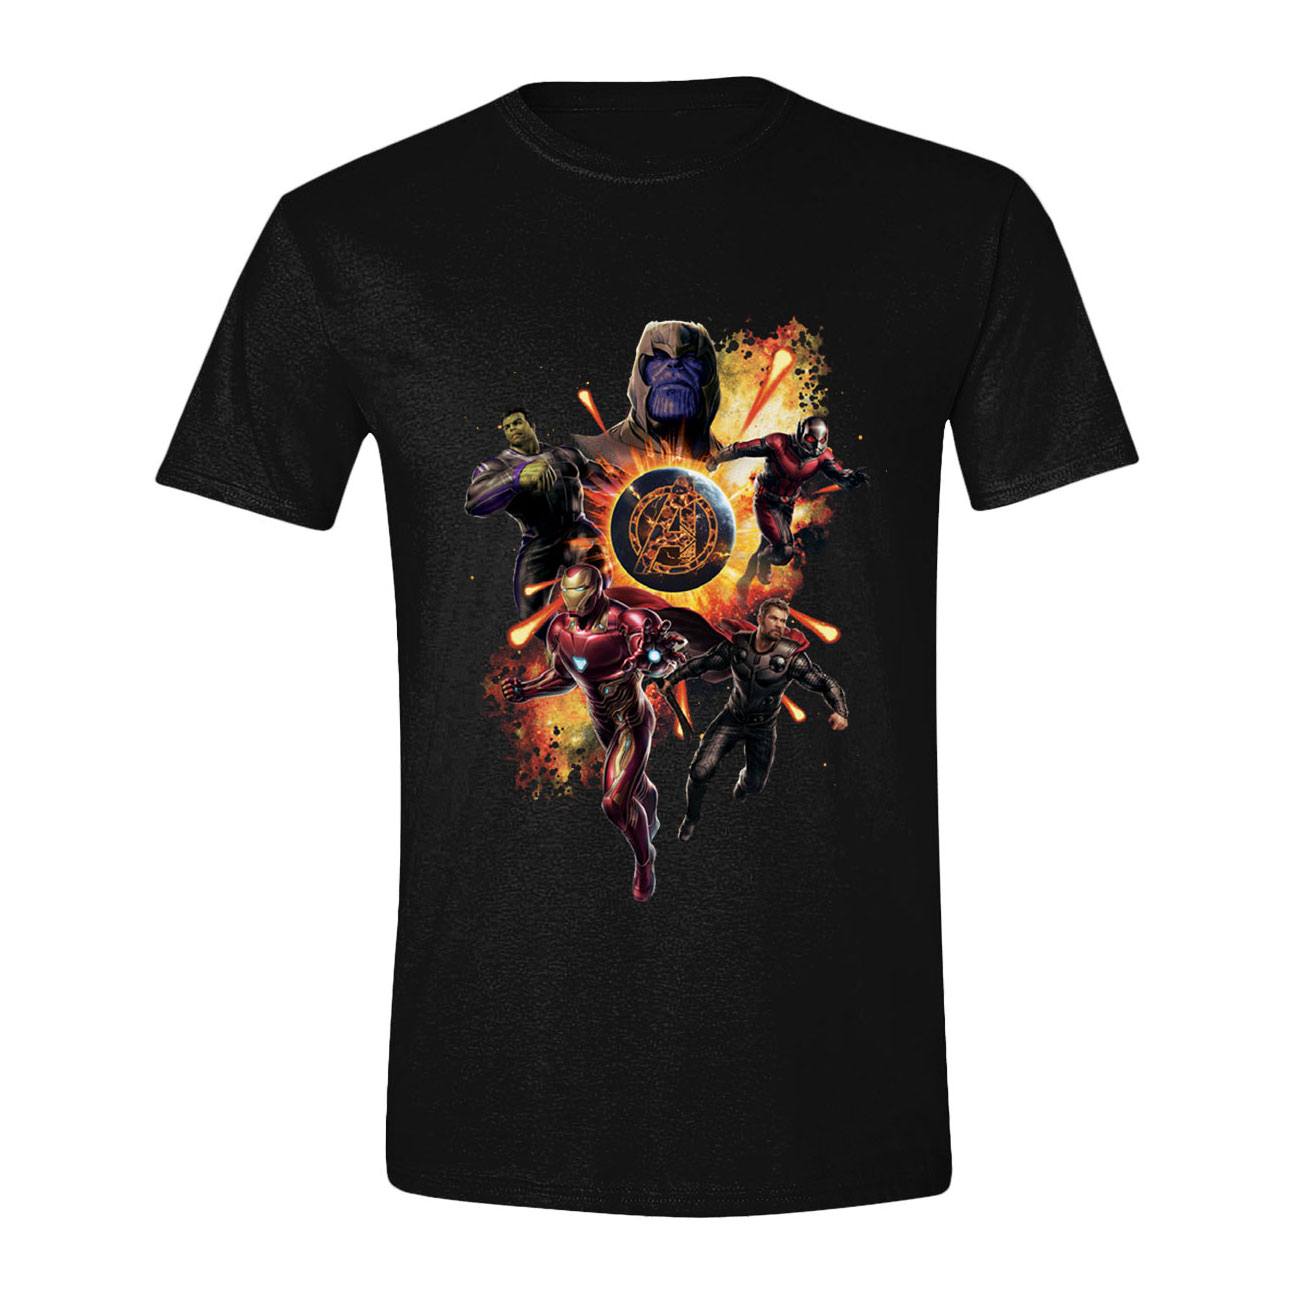 Avengers : Endgame T-Shirt Thanos & Avengers (M)